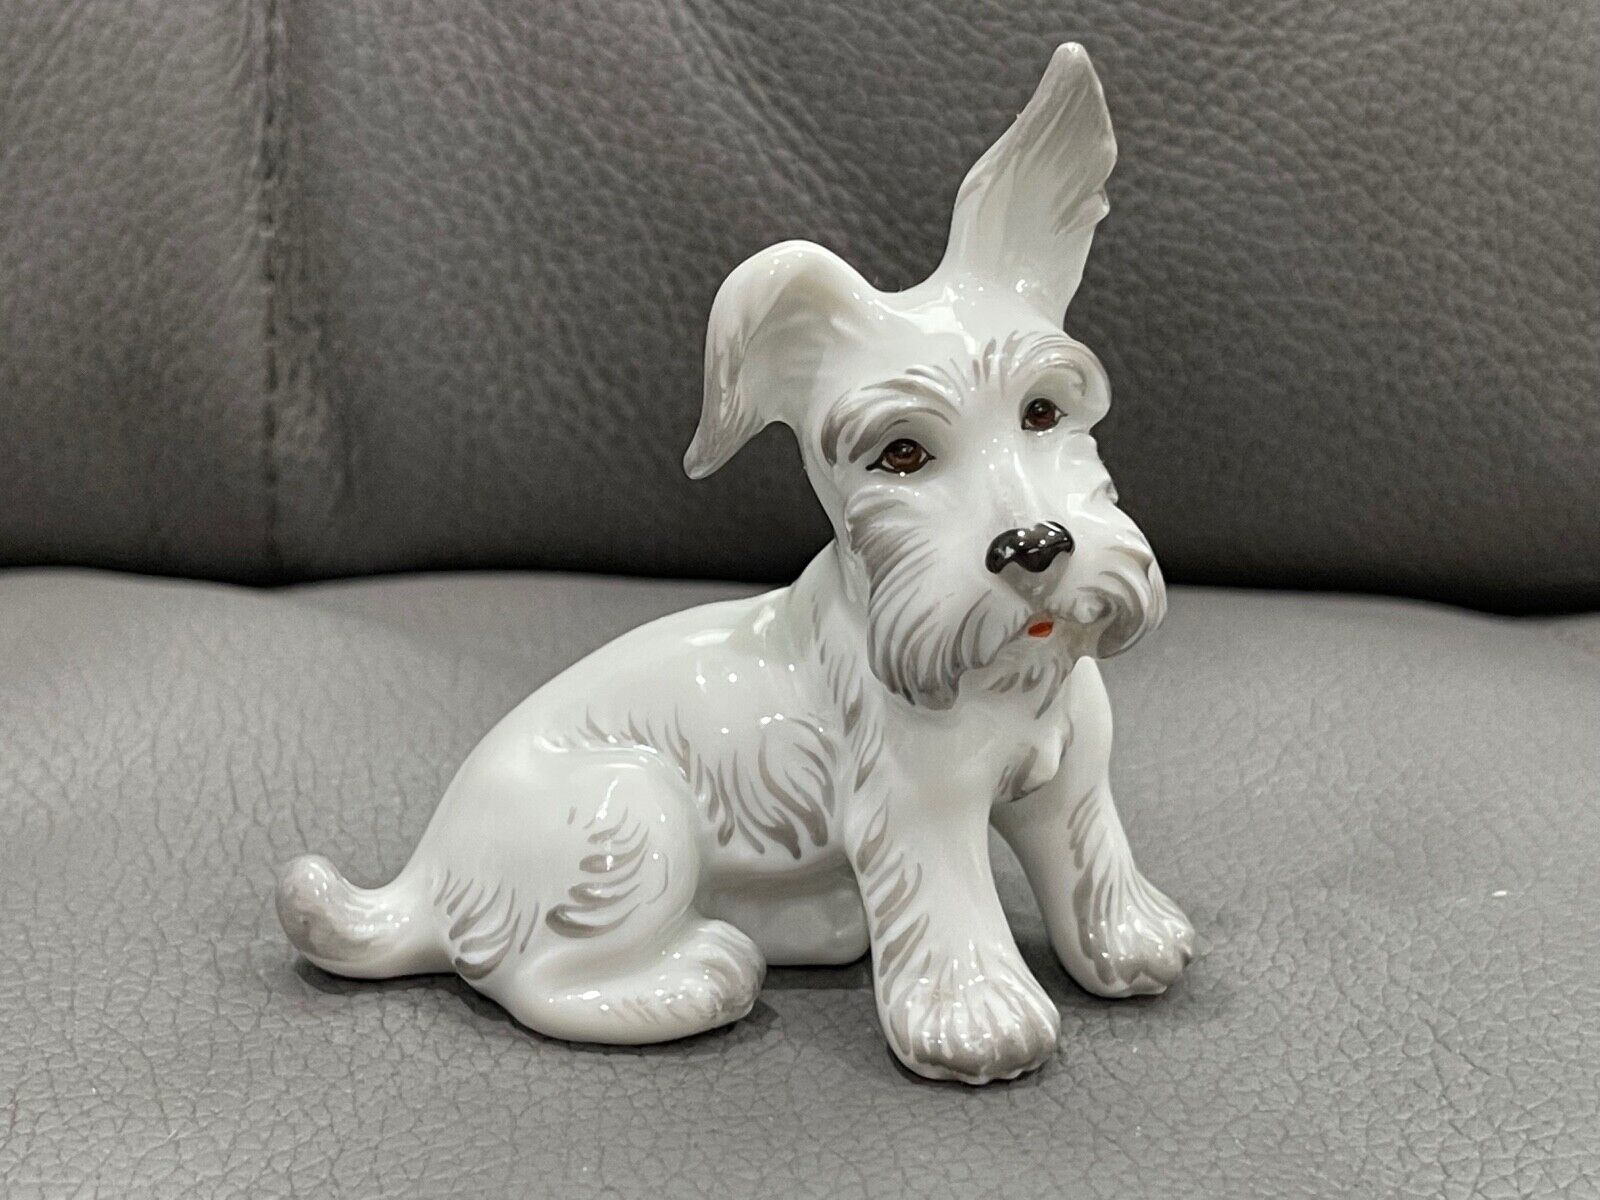 Vtg Royal Vienna Porcelain Augarten Wien White Terrier Dog Puppy Figurine